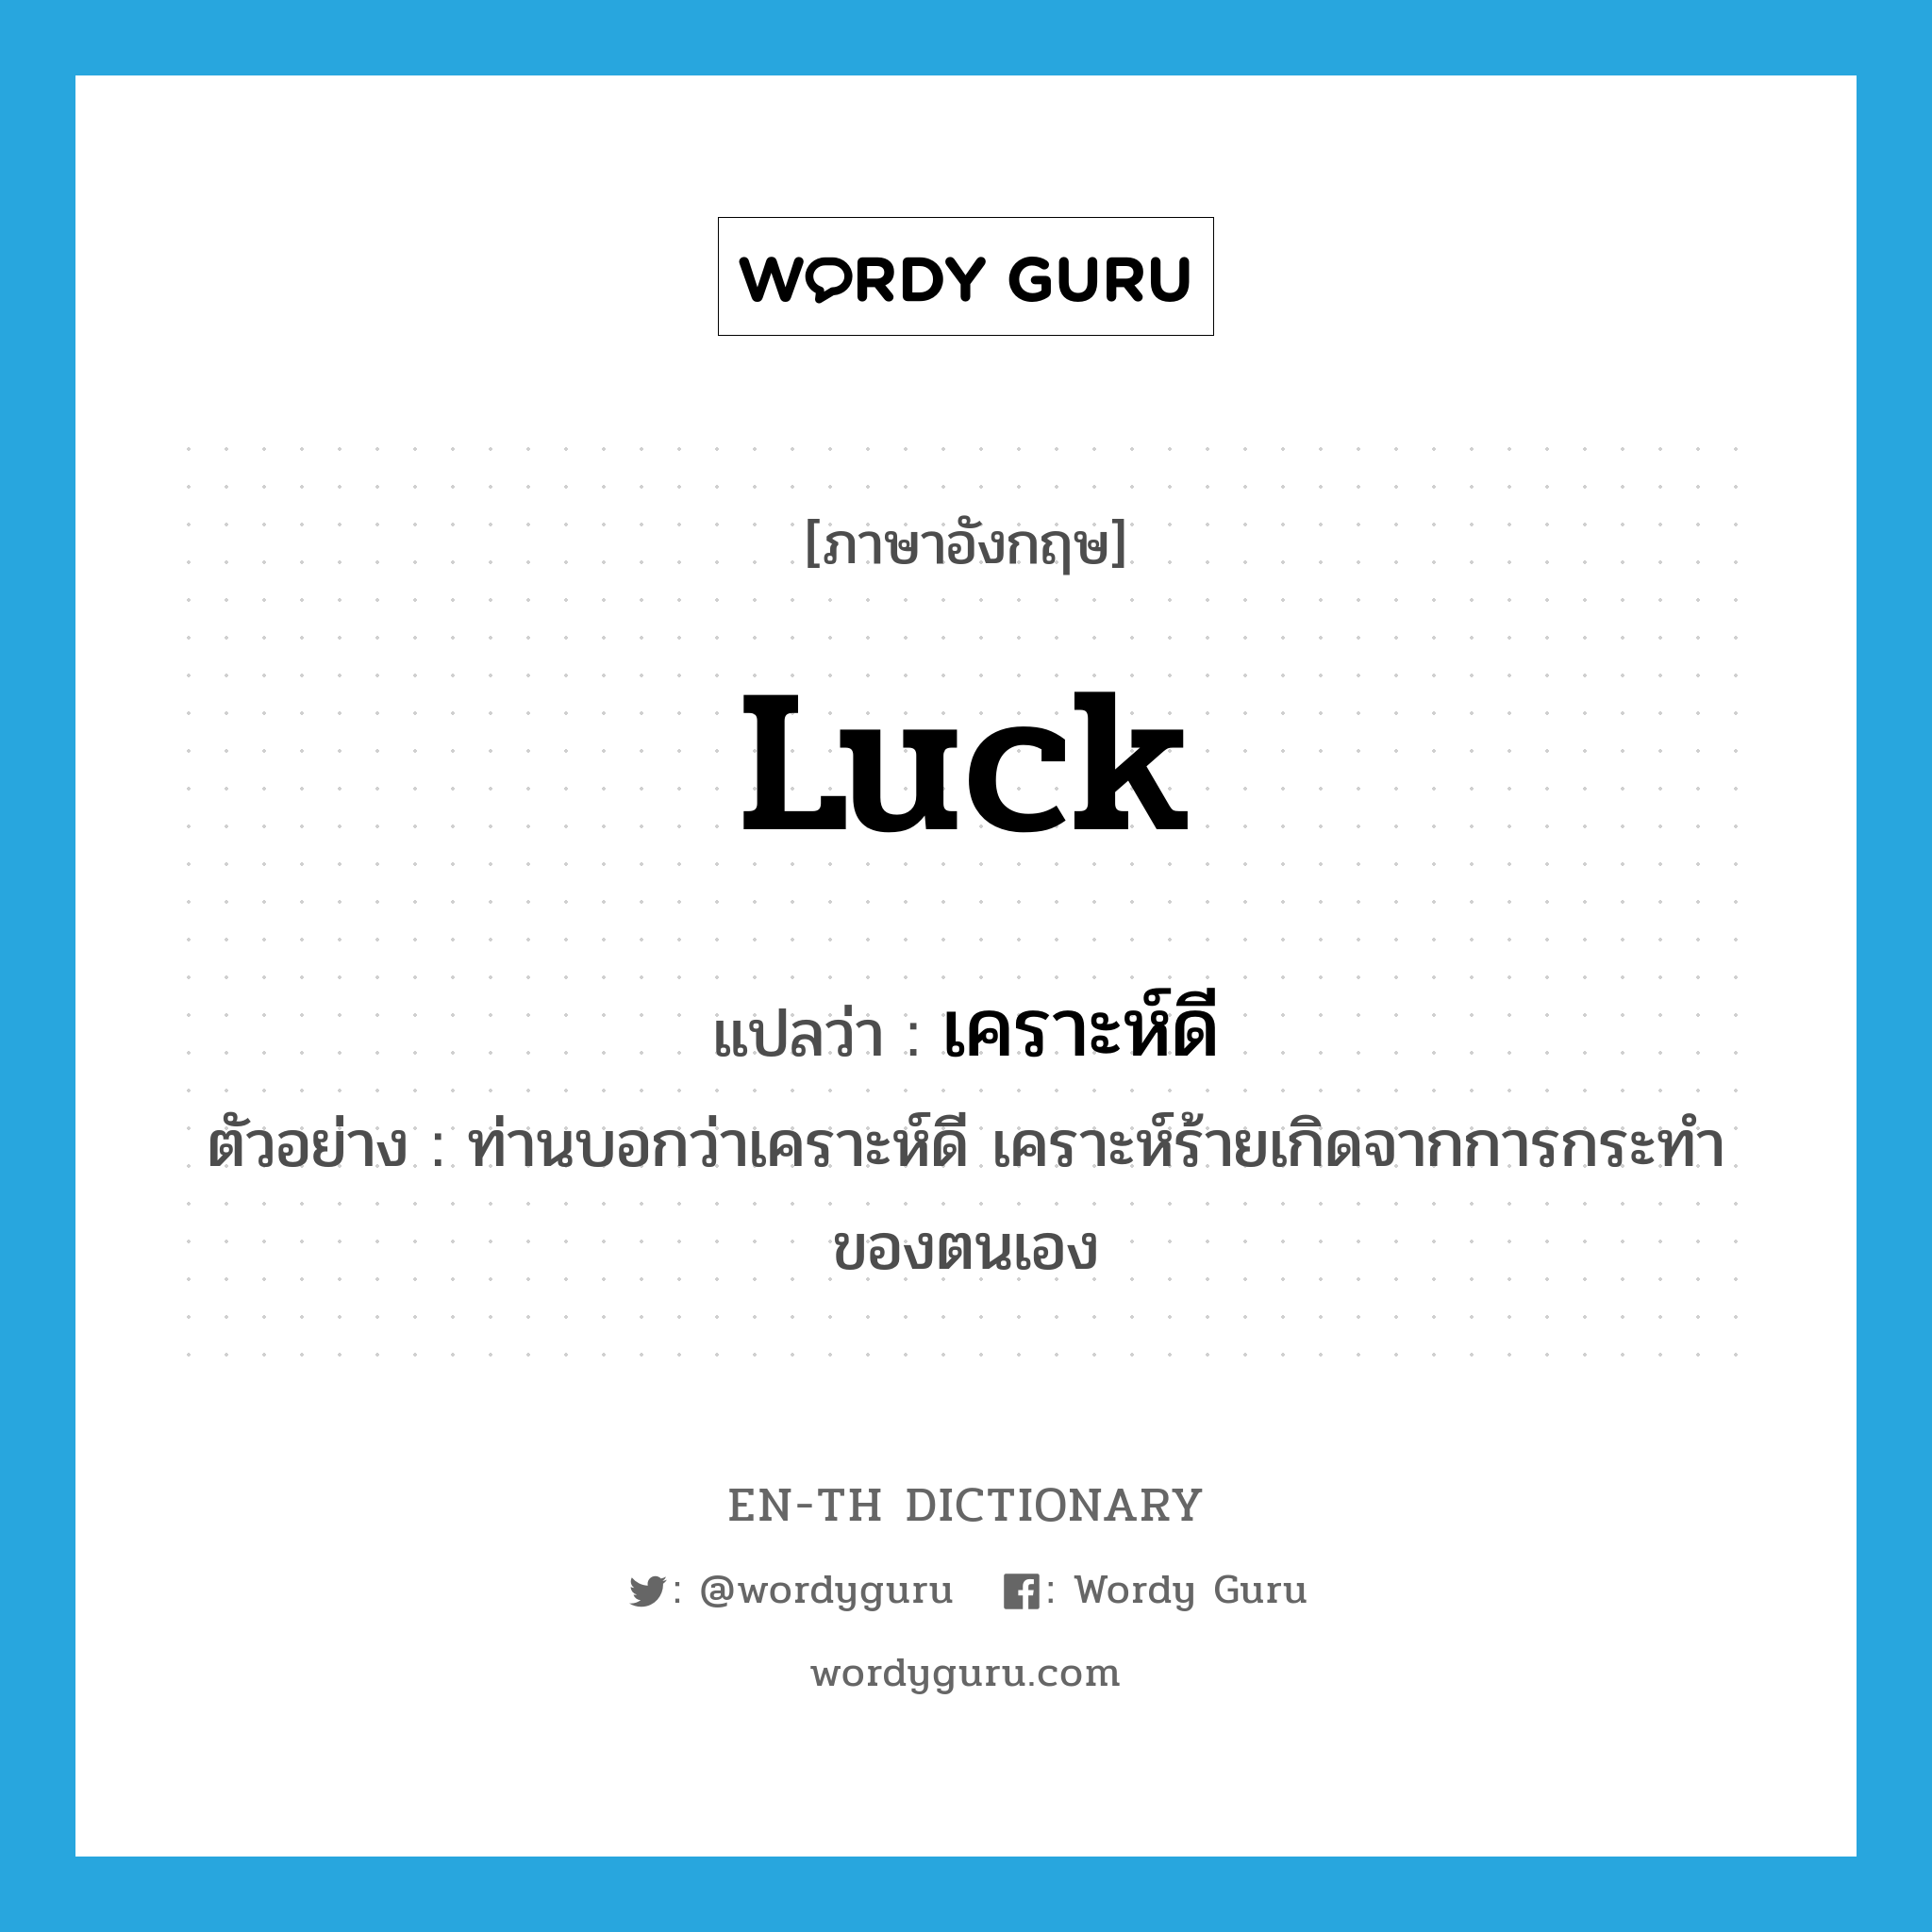 luck แปลว่า?, คำศัพท์ภาษาอังกฤษ luck แปลว่า เคราะห์ดี ประเภท N ตัวอย่าง ท่านบอกว่าเคราะห์ดี เคราะห์ร้ายเกิดจากการกระทำของตนเอง หมวด N